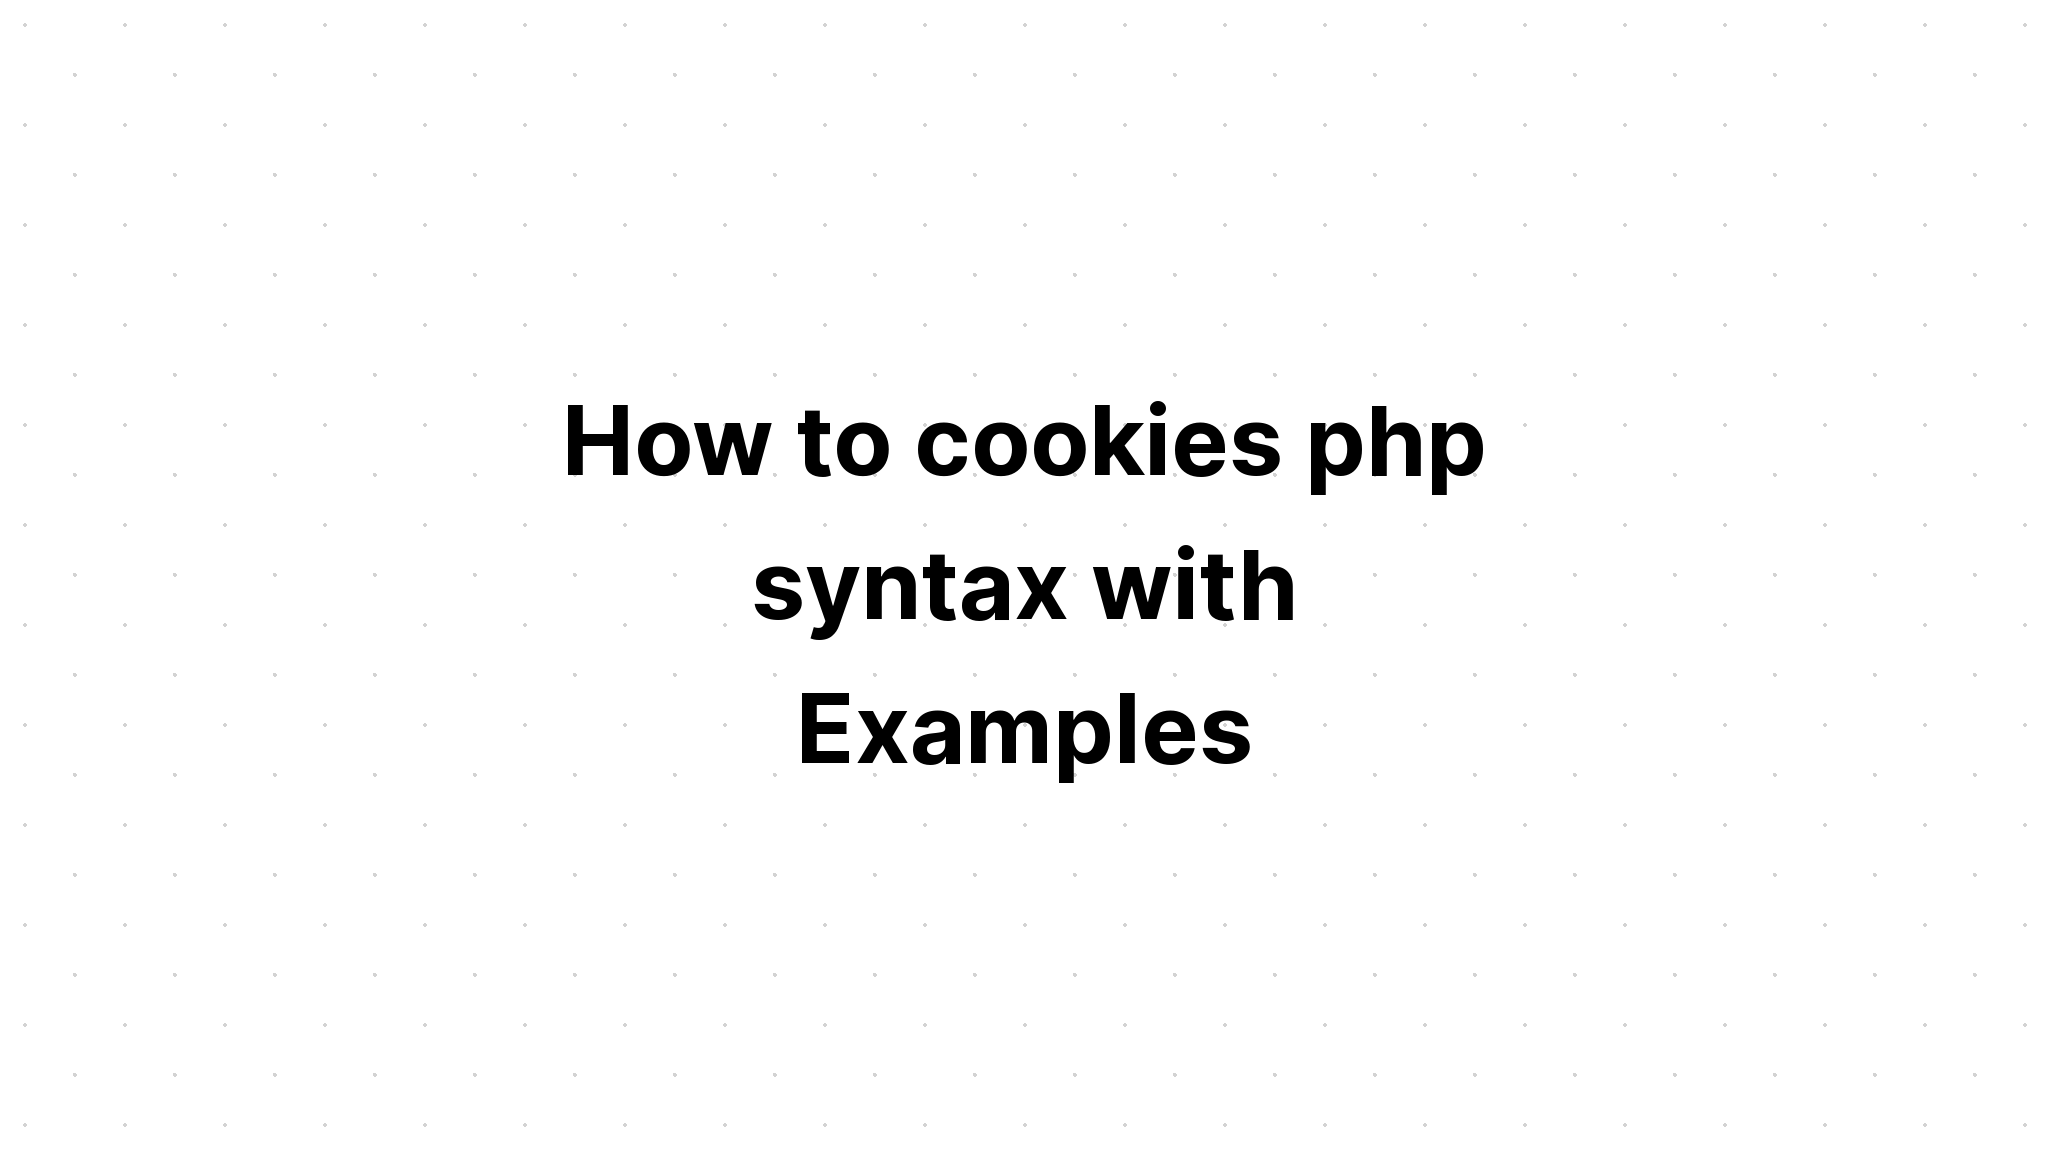 Cách cookie cú pháp php với các ví dụ